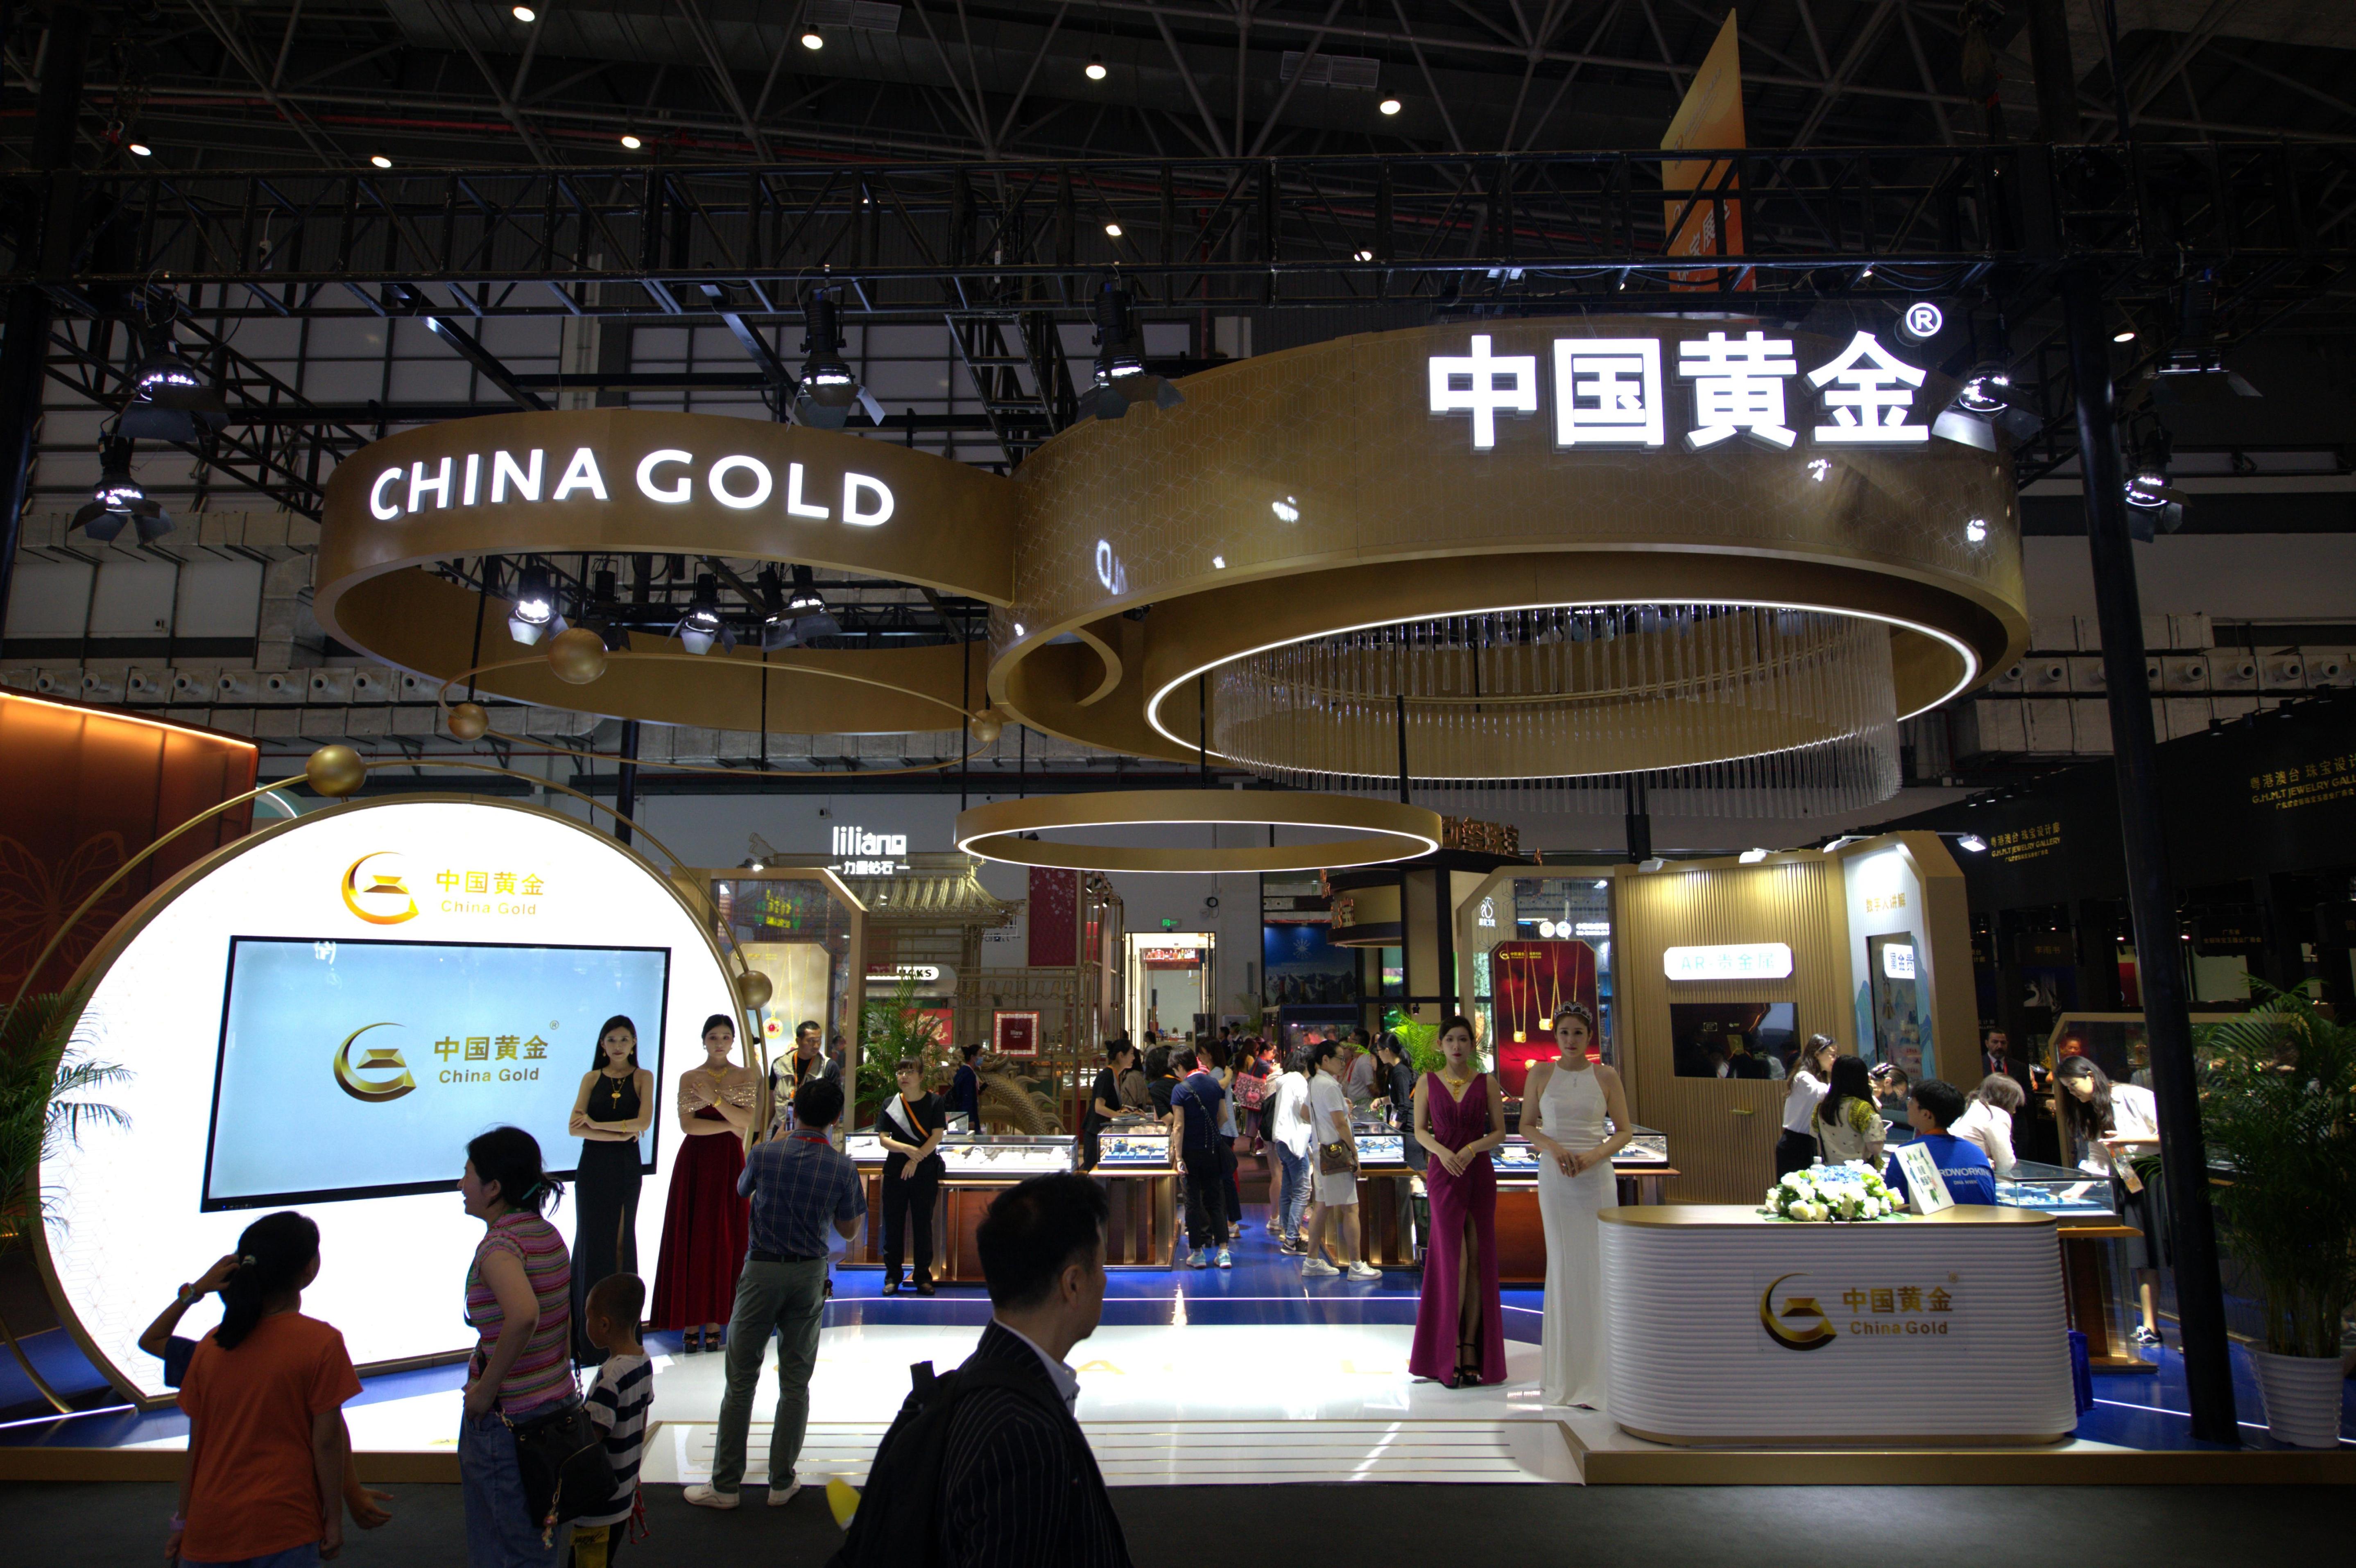 4月13日
，共好生活室内总展示面积12.8万平方米�，创全</p>球美观众正在参观中国黄金展台。组图人民网记者 翁奇羽摄